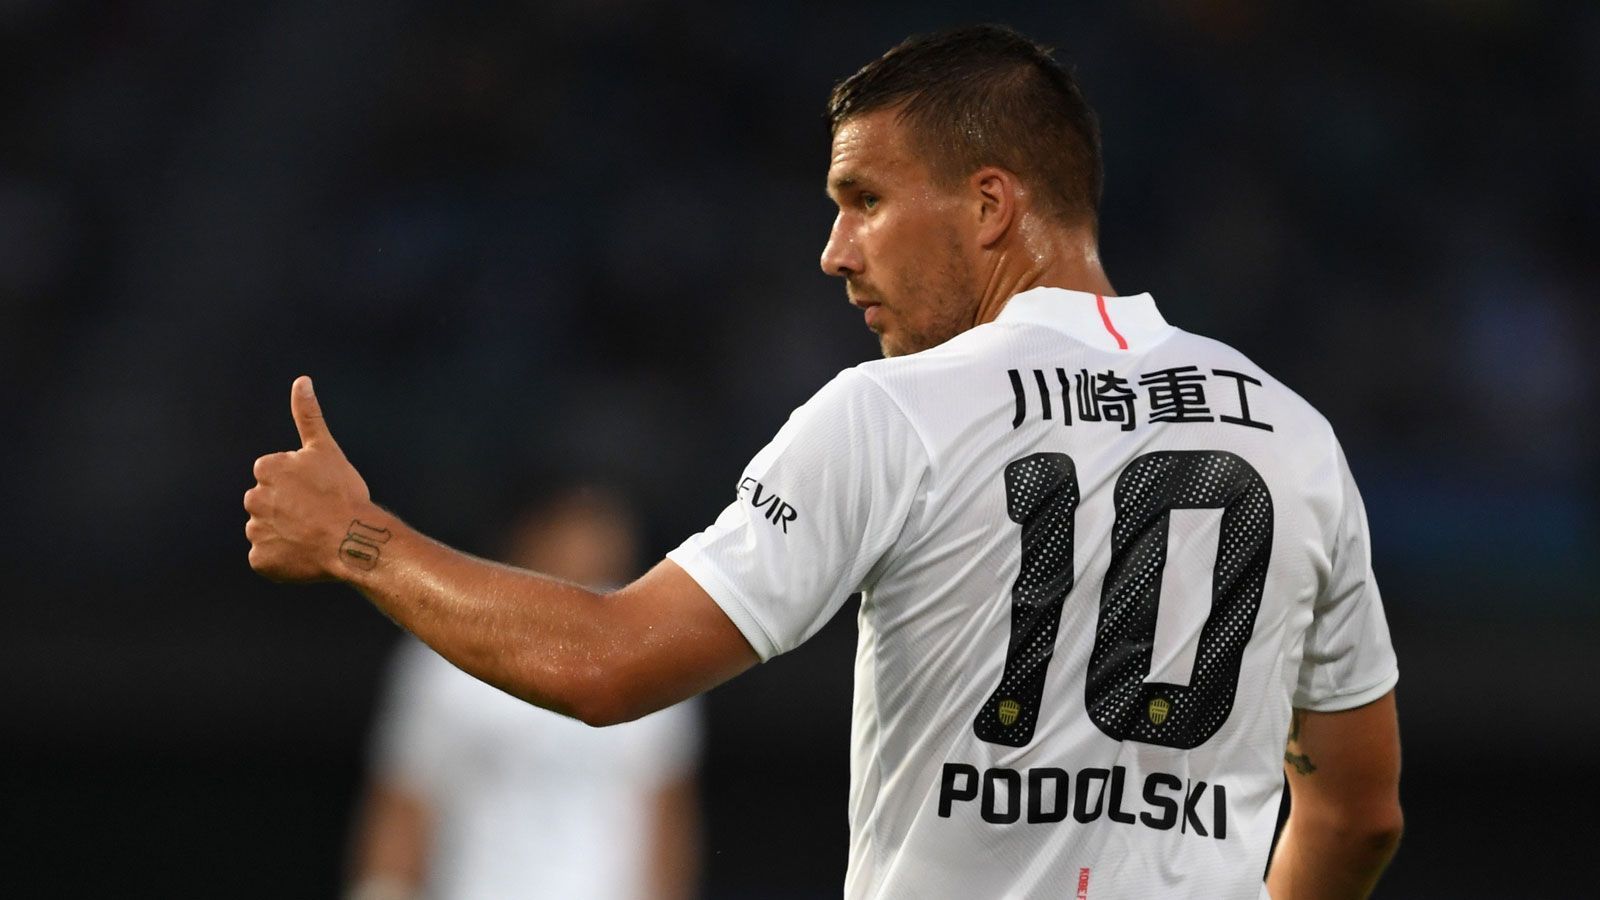 
                <strong>Lukas Podolski</strong><br>
                Bereits bei der WM 2014 spielte Podolski nicht mehr die ganz große Rolle und bestritt dennoch insgesamt 130 Länderspiele, bevor er 2017 aus dem DFB-Team verabschiedet wurde. Nach knapp drei Jahren in Japan bei Vissel Kobe, unter anderem an der Seite von Andres Iniesta, lässt "Poldi" seit Januar 2020 seine Karriere bei Antalyaspor in der türkischen Süper Lig ausklingen. 
              